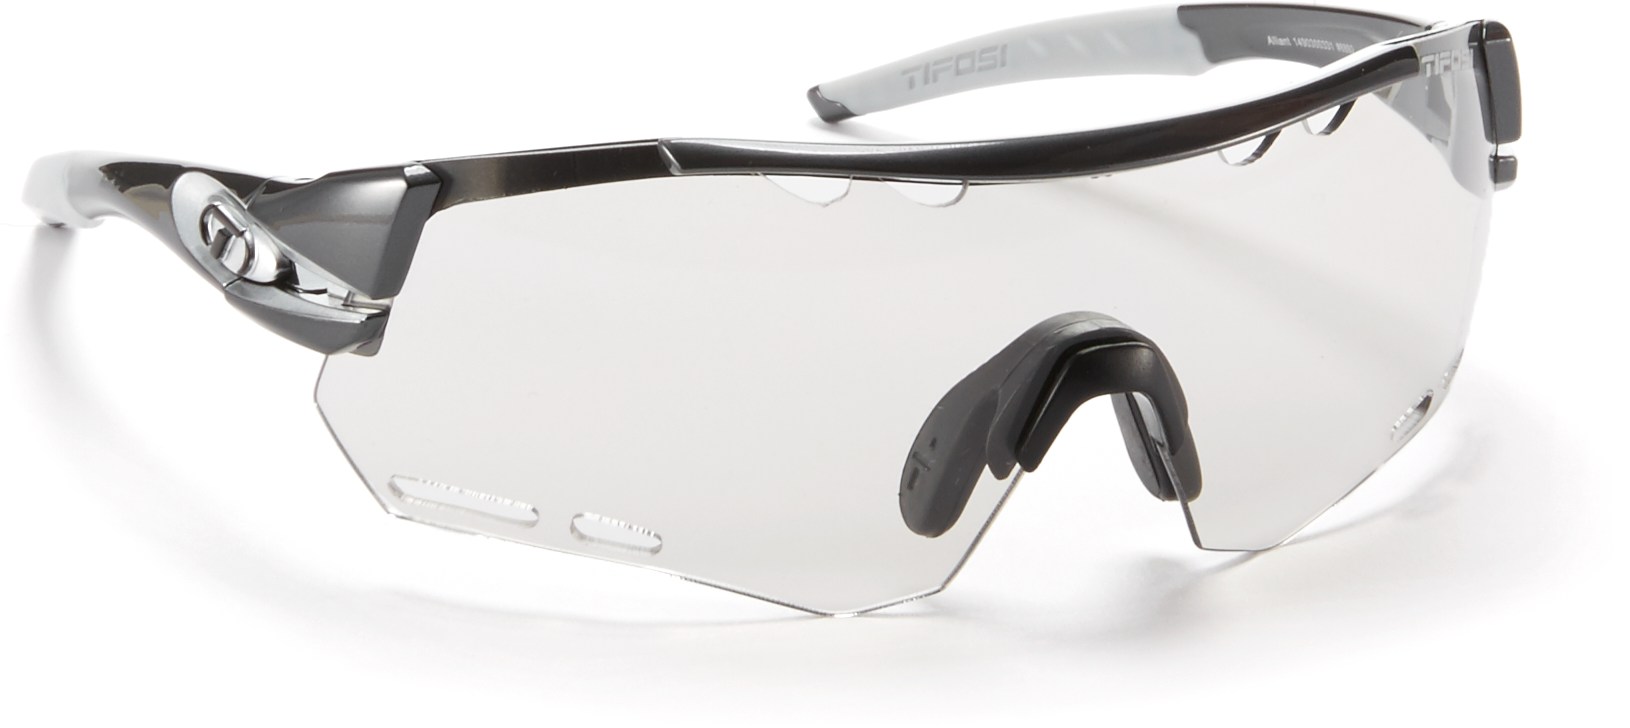 Солнцезащитные очки Alliant Tifosi, серый